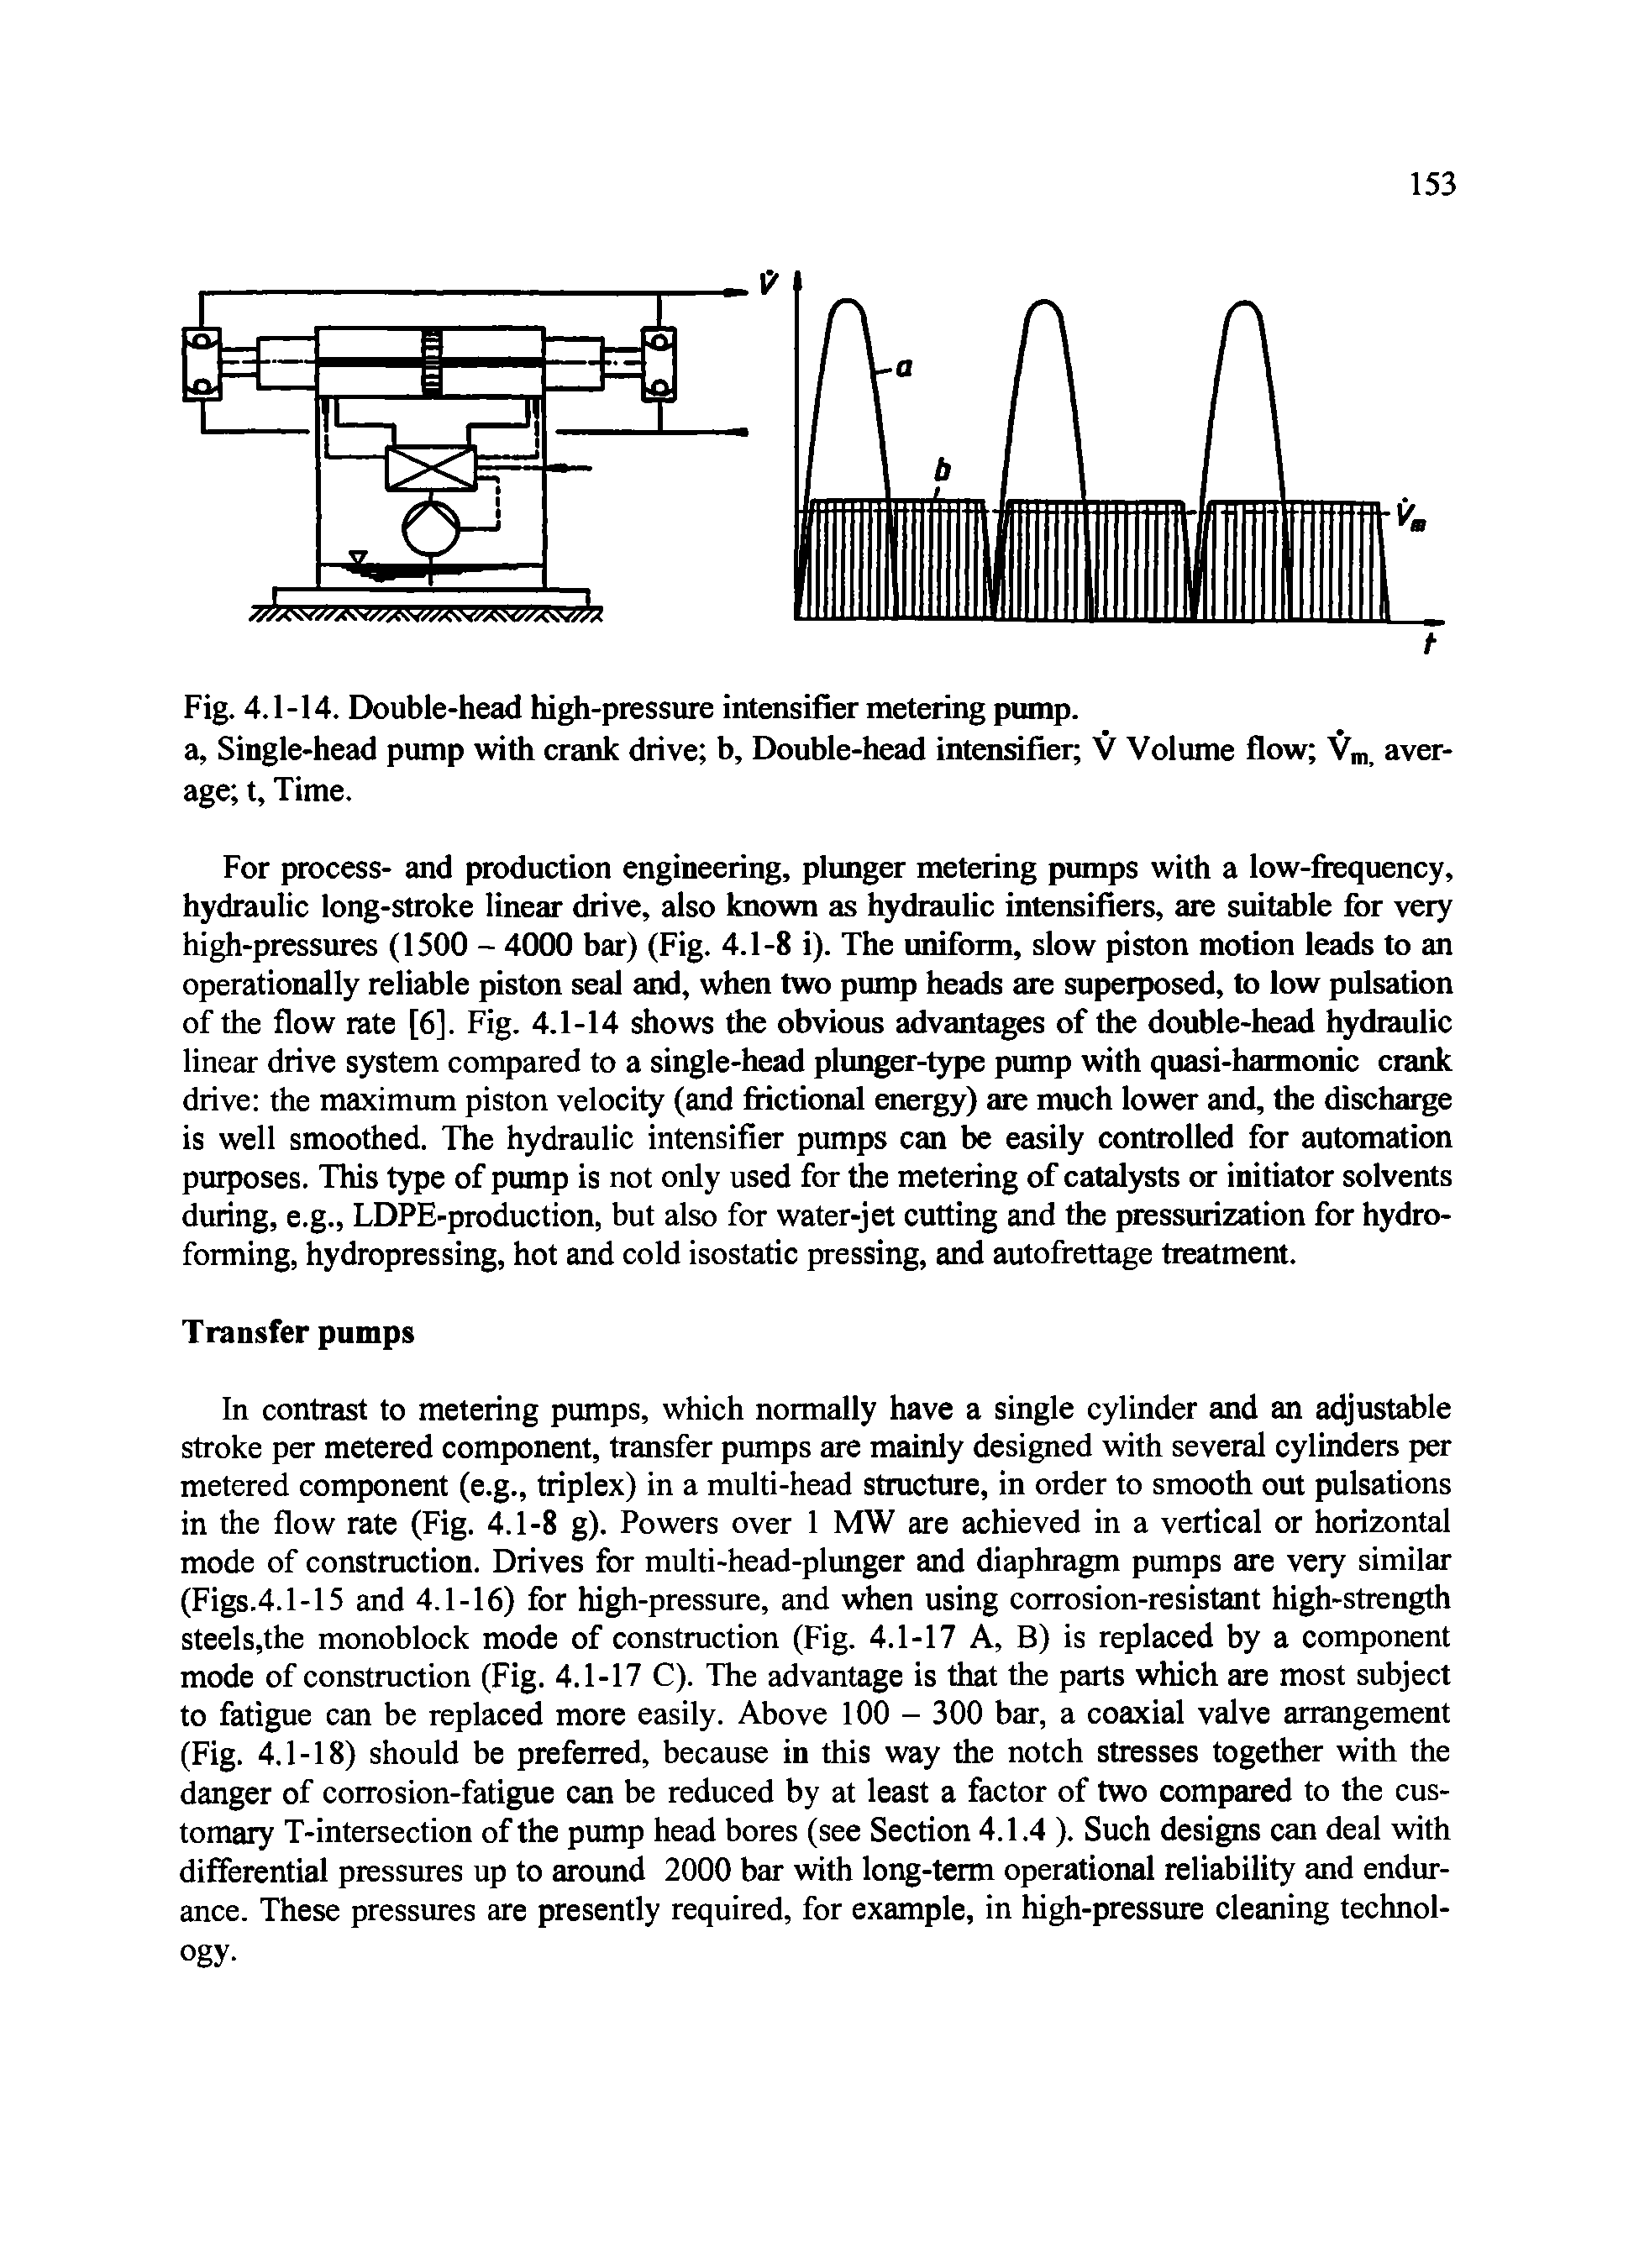 Fig. 4.1-14. Double-head high-pressure intensifier metering pump.